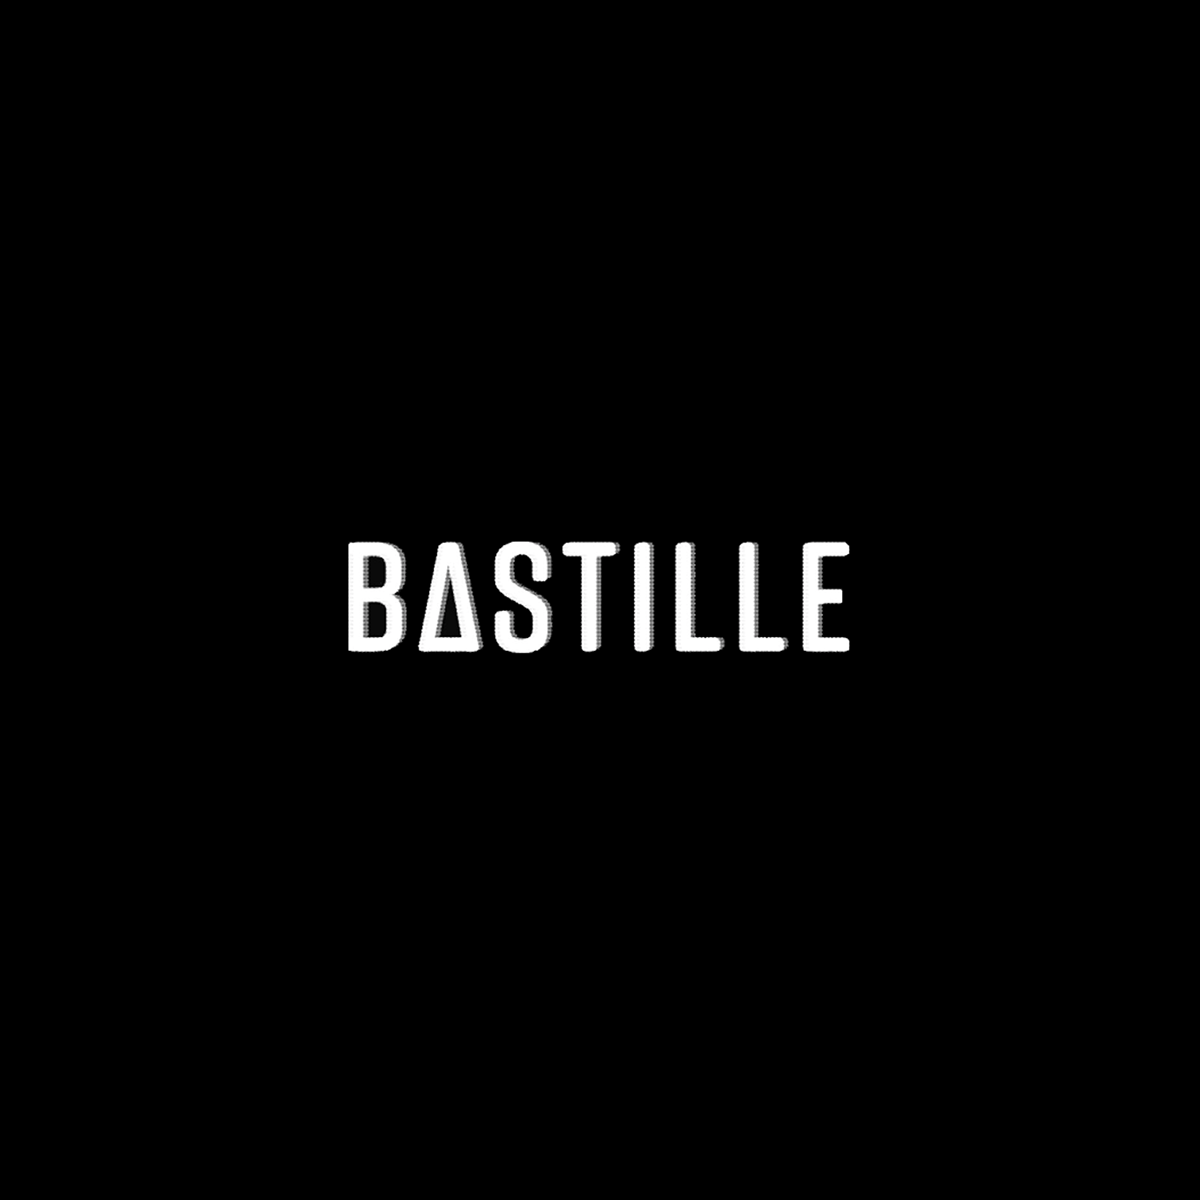 Bastille Black and White Logo - Bastille (Last Updated: 18/11/2018) on Behance